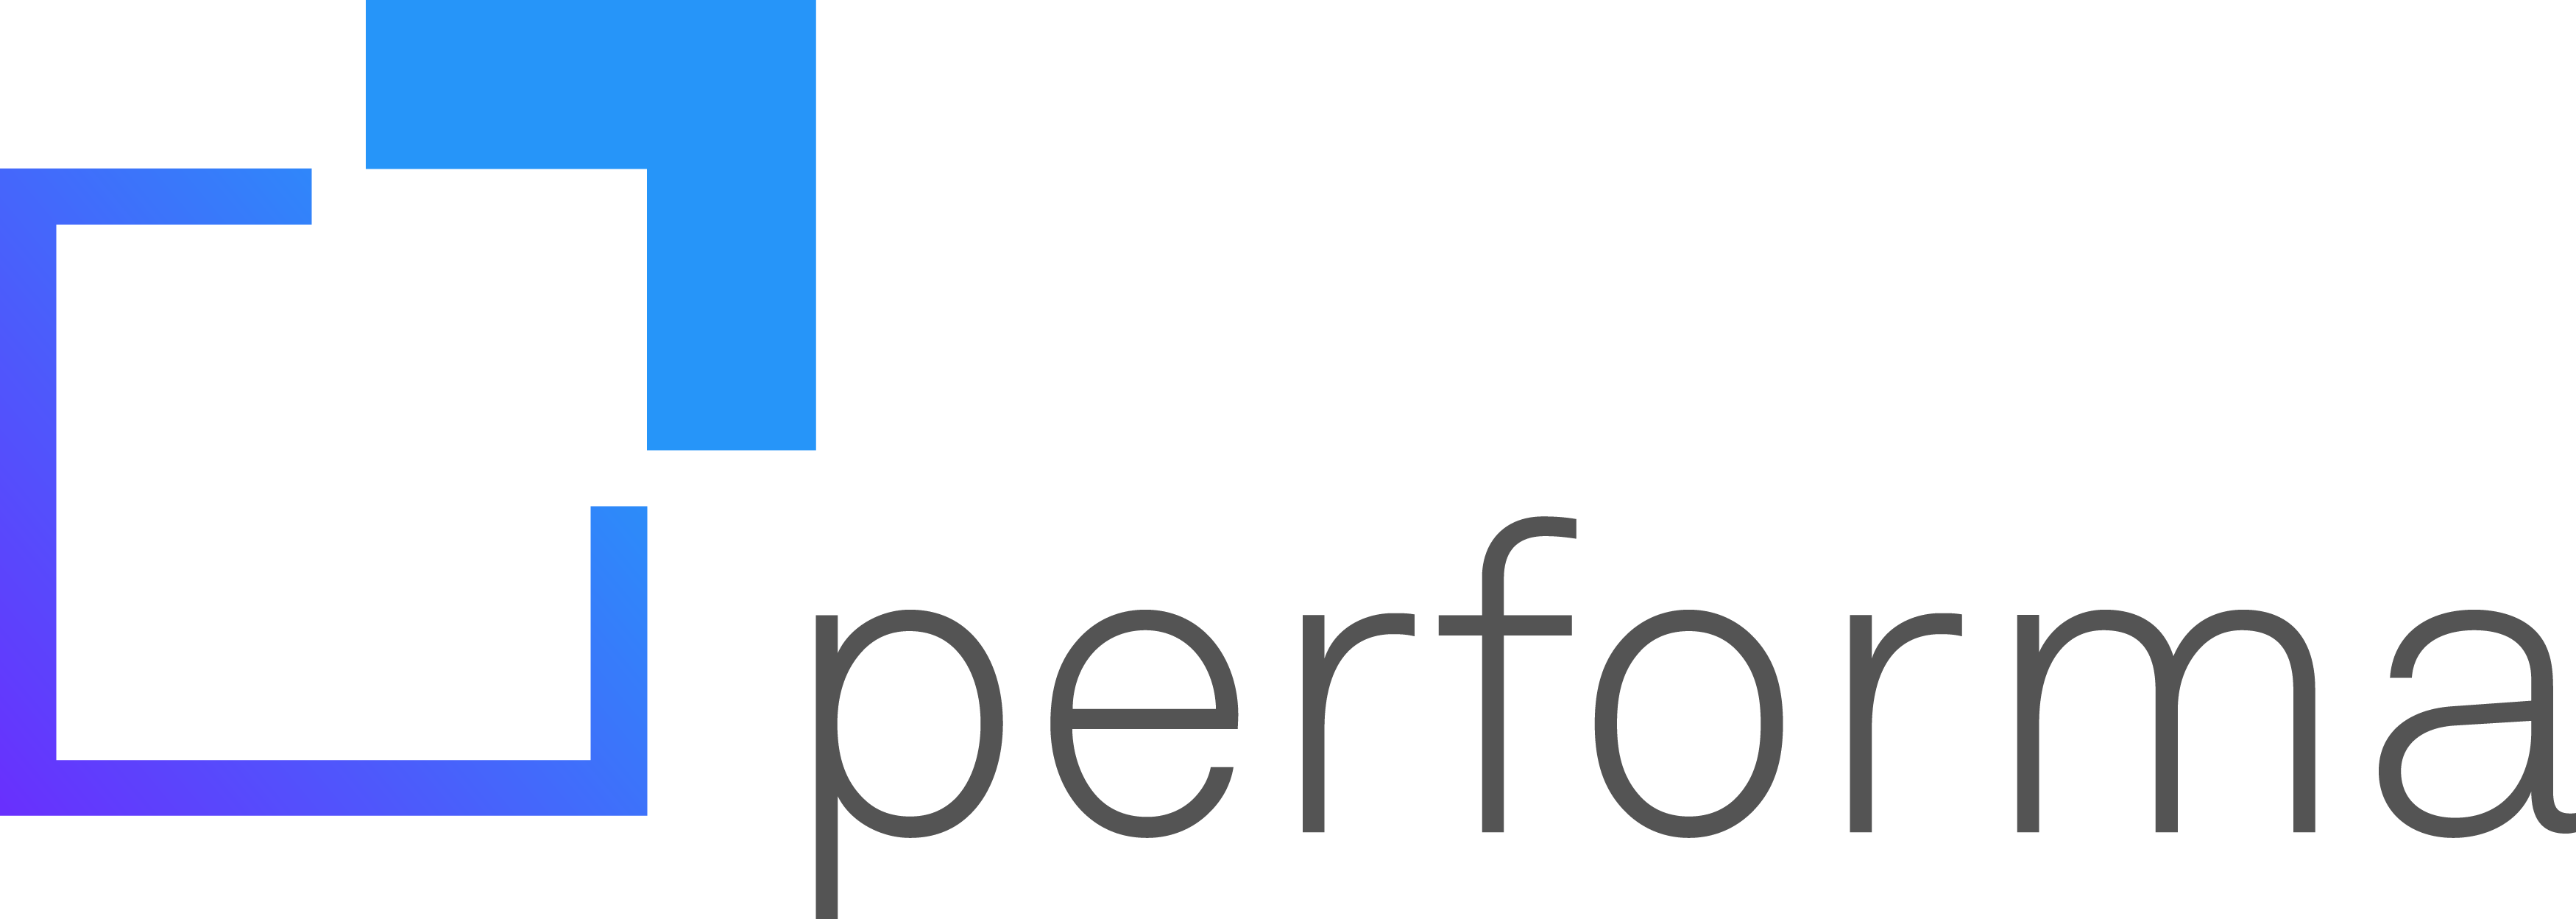 Logotipo MicroPower Performa: no lado esquerdo da imagem, um quadrado de contornos finos, em tons de azul e roxo, com um dos cantos deslocado e destacado por um traço mais grosso. Ao lado direito do símbolo, a escrita MicroPower Performa na cor preta.